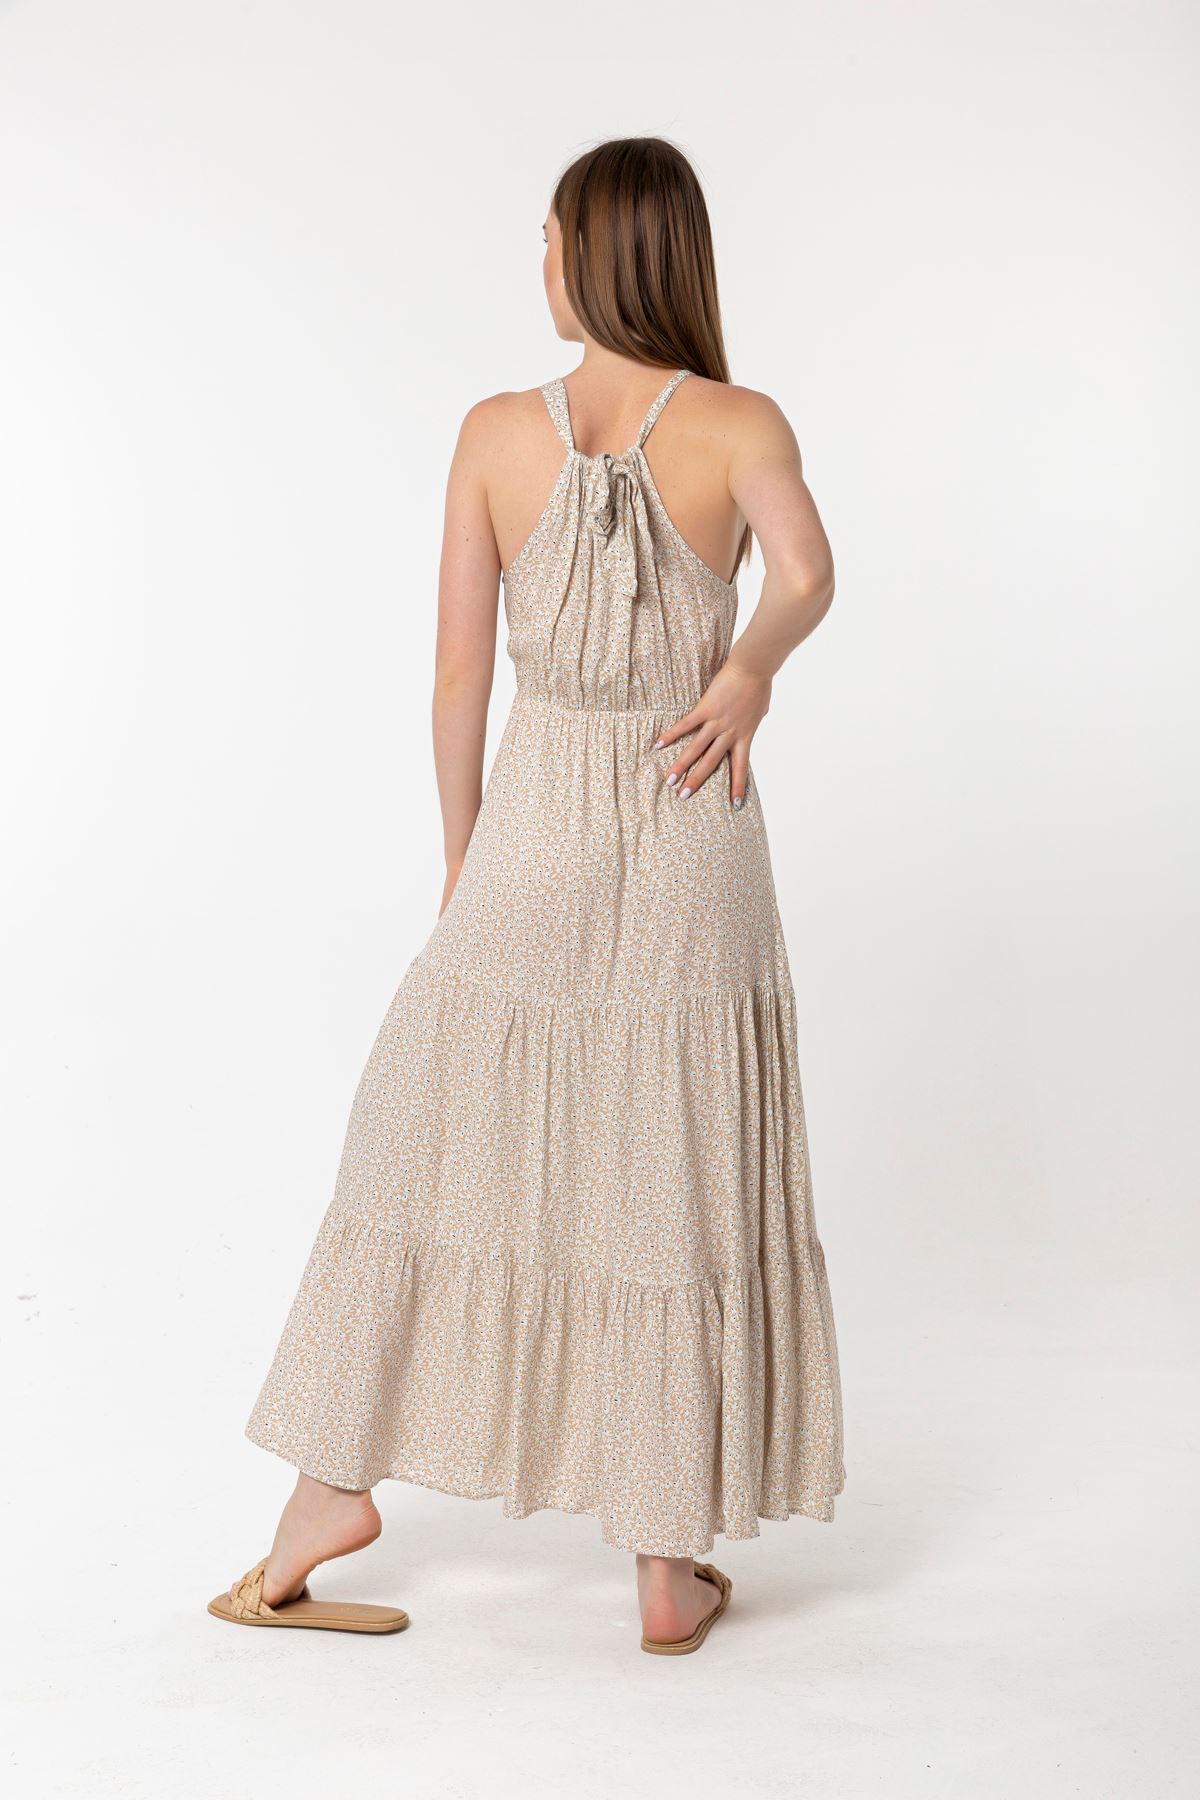 Viscose Fabric Sleeveless Queen Anna Neck Long Wide Leaf Print Dress - Beige 